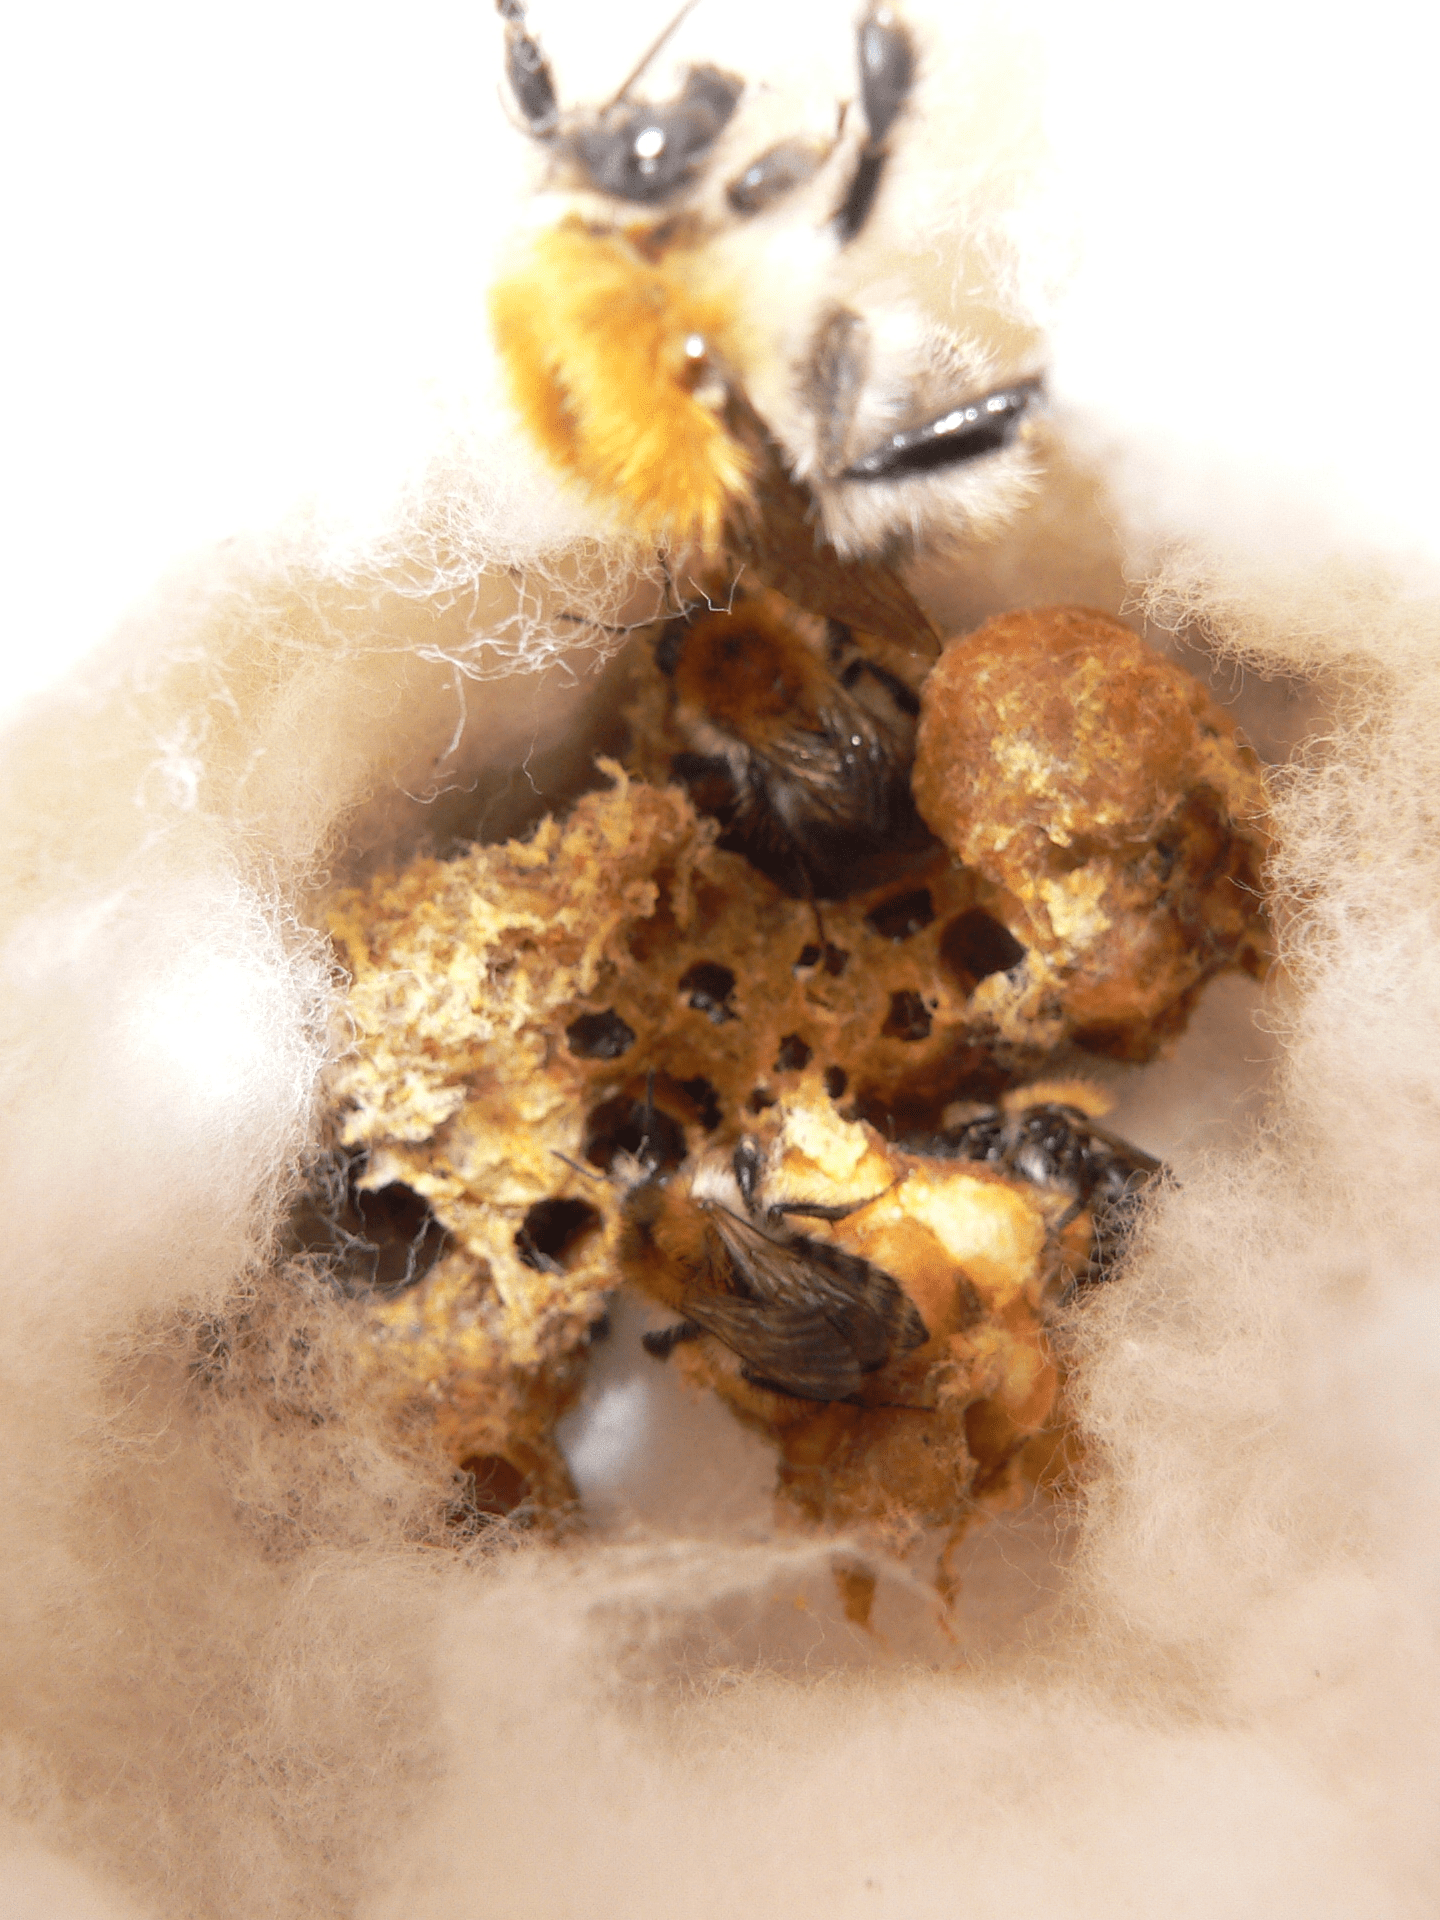 Čmeláci PLUS - Hnízdo čmeláků rolních (Bombus pascuorum) - Foto Jaromír Čížek 2